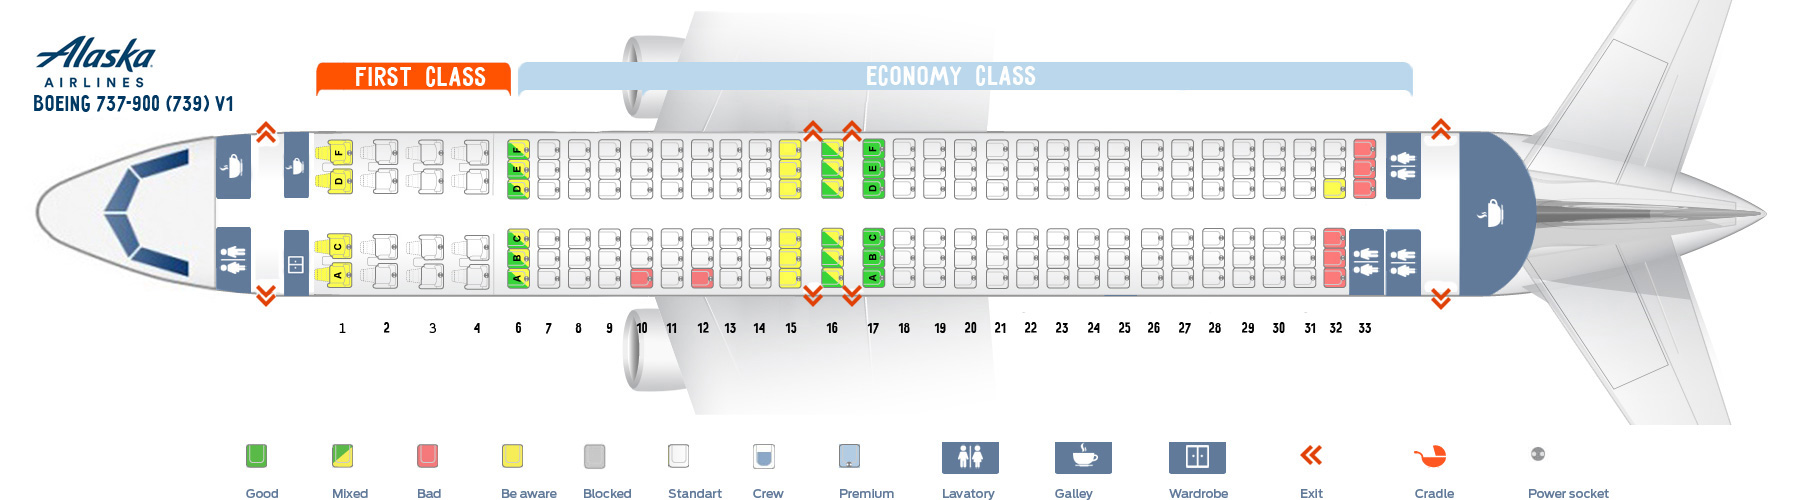 Seat Map Boeing 737-900 V1 Alaska Airlines